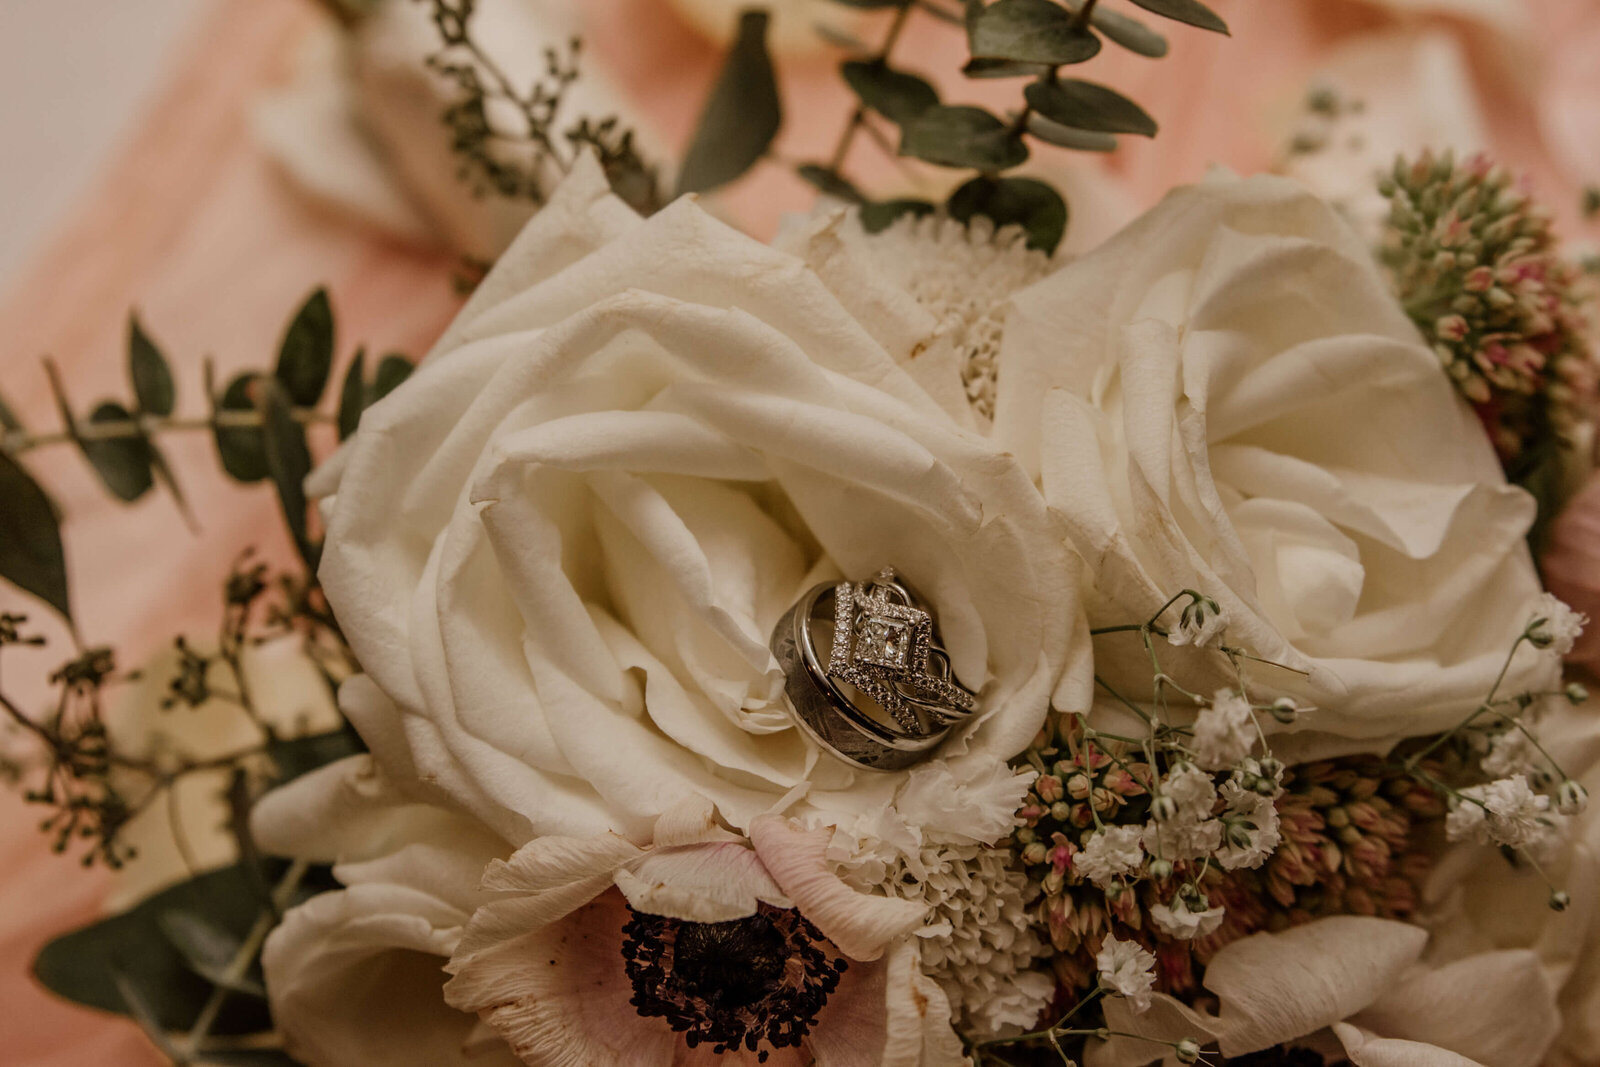 Wedding rings in flowers.